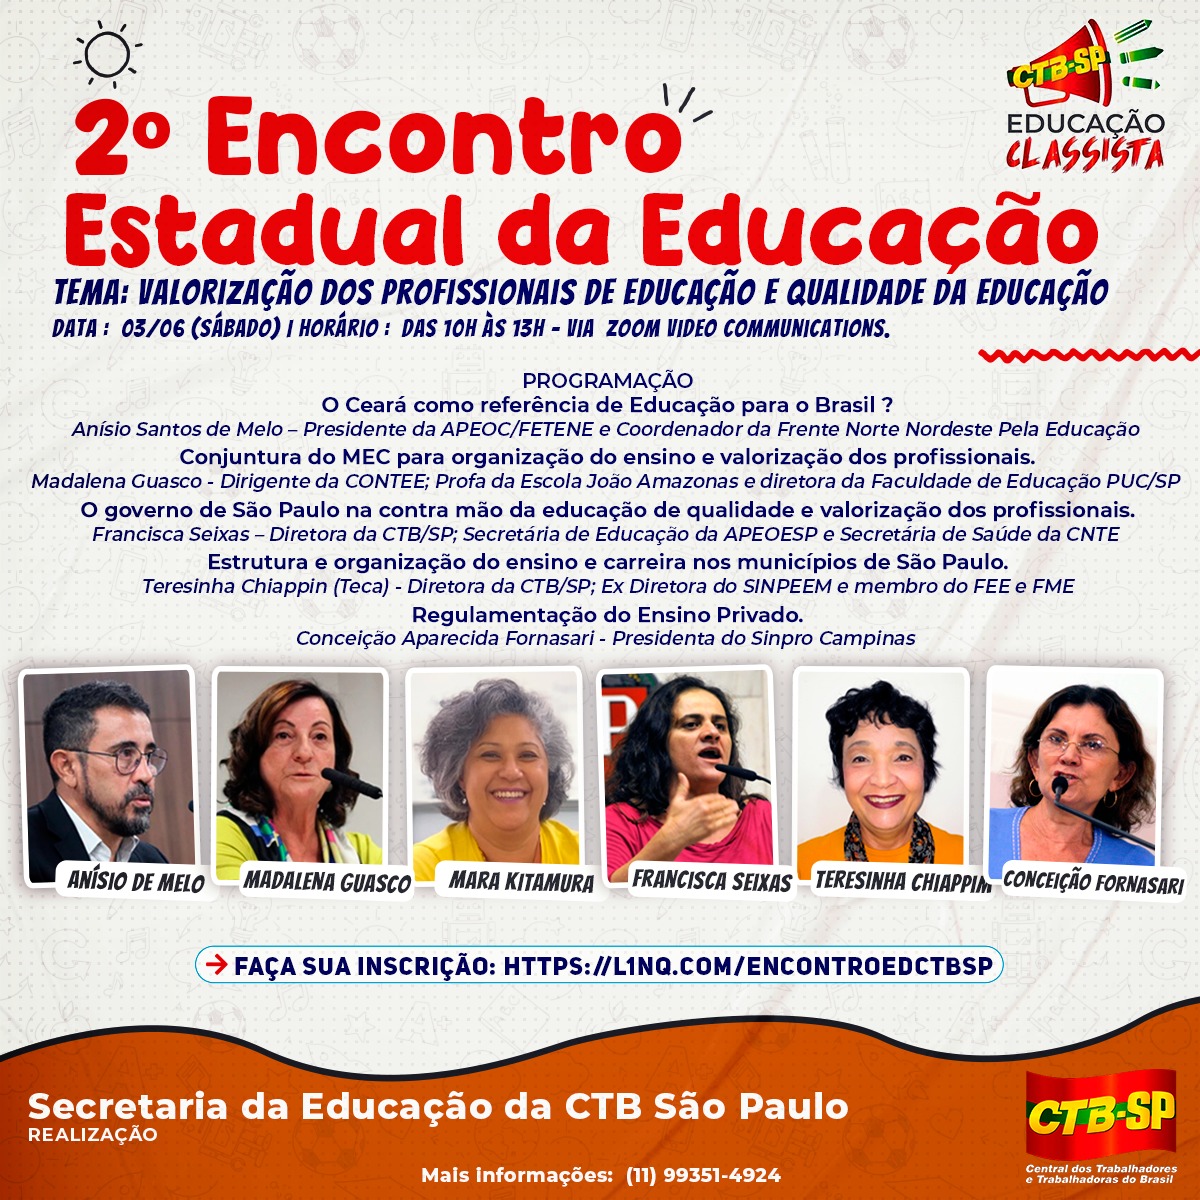 II Encontro Estadual da Educação: Presidente do Sinpro Campinas defende a regulamentação do Ensino Privado